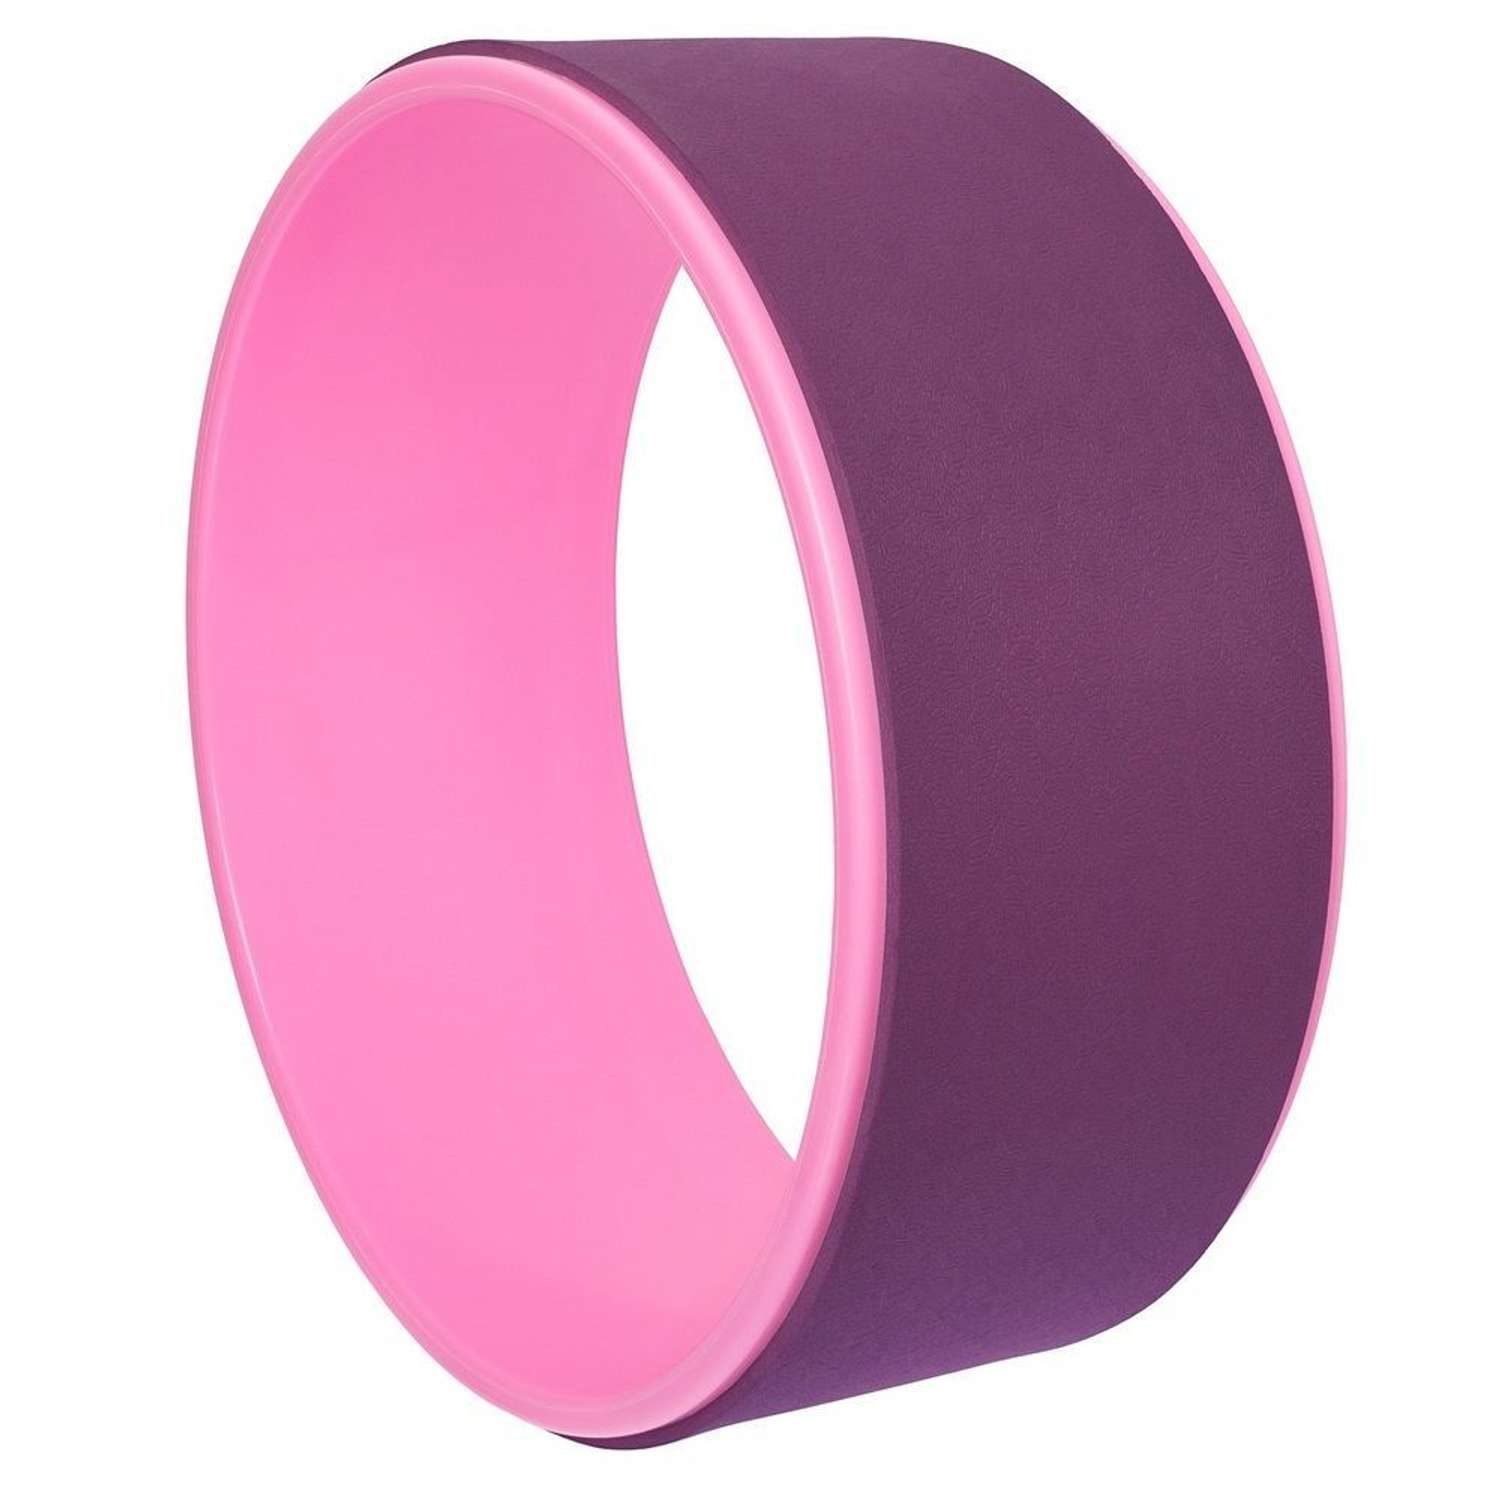 Колесо для йоги STRONG BODY фитнеса и пилатес 30 см х 12 см пурпурно-розовое - фото 2